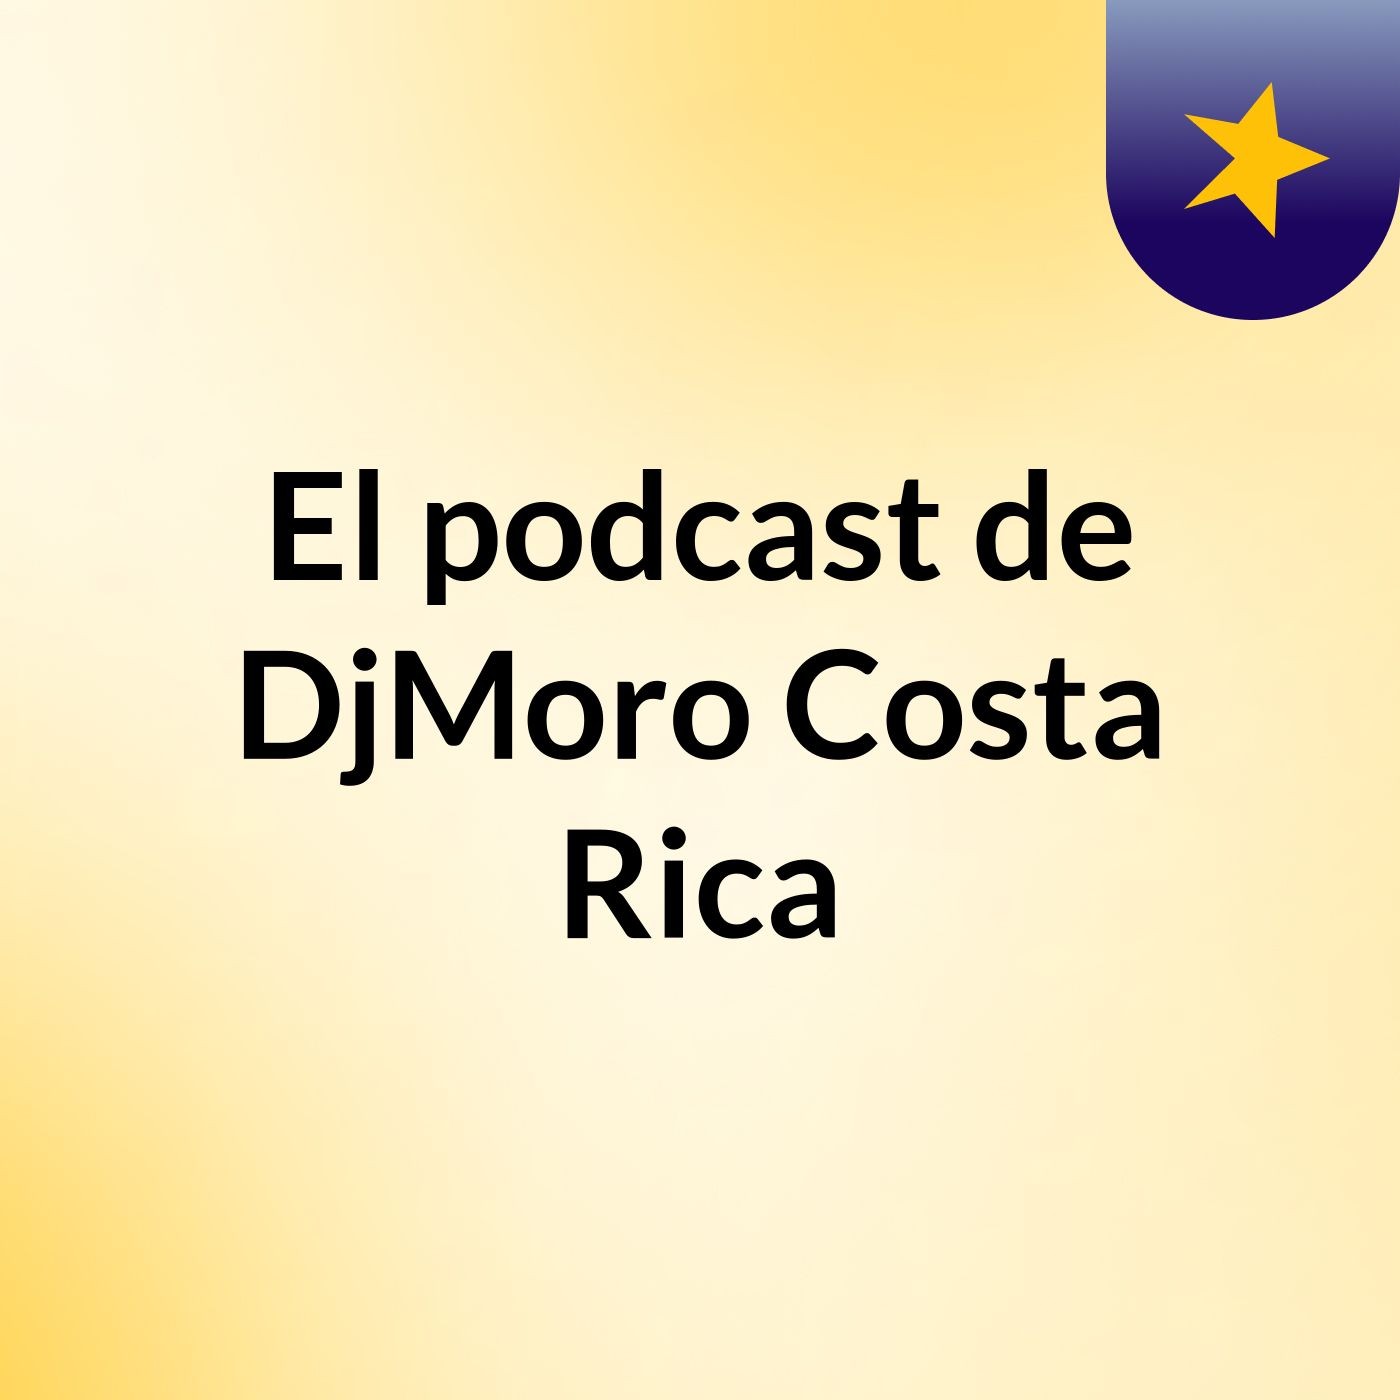 El podcast de DjMoro Costa Rica